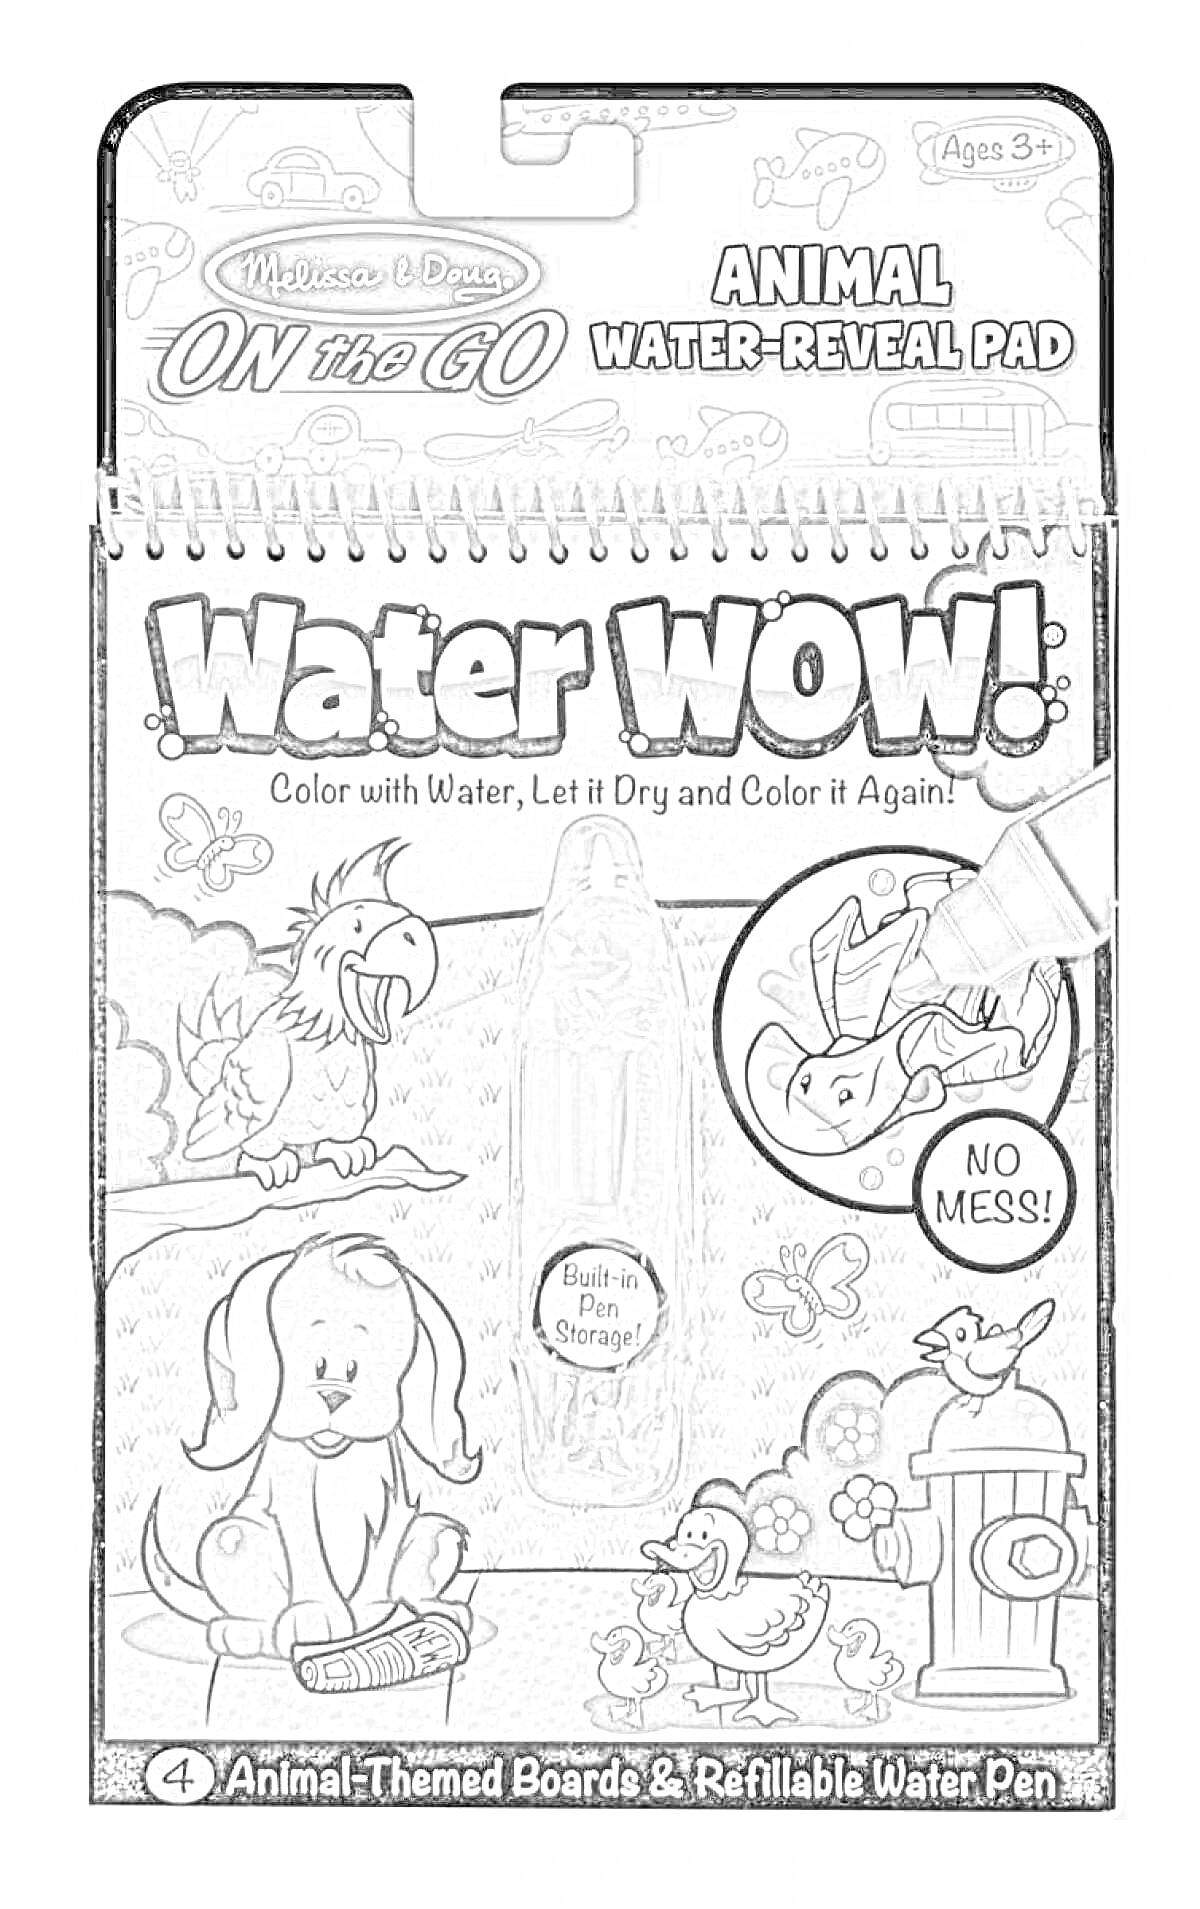 Раскраска Animal Water-Reveal Pad от Melissa & Doug, включает 4 доски с изображениями животных и многоразовый водяной маркер